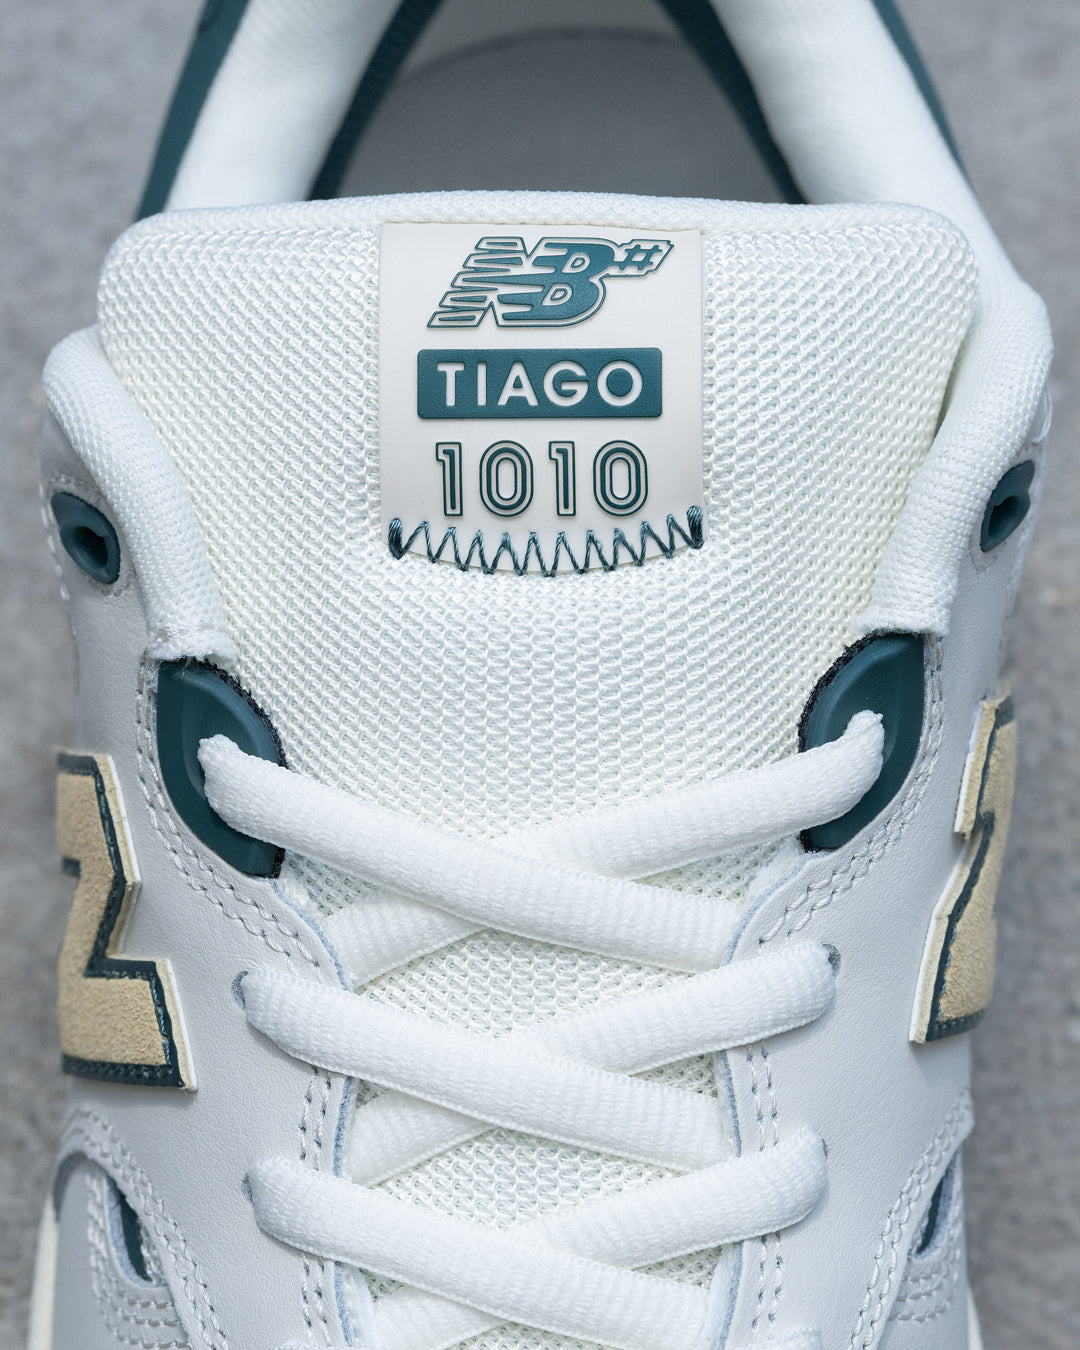 New Balance Numeric Tiago Lemos 1010 White/Green